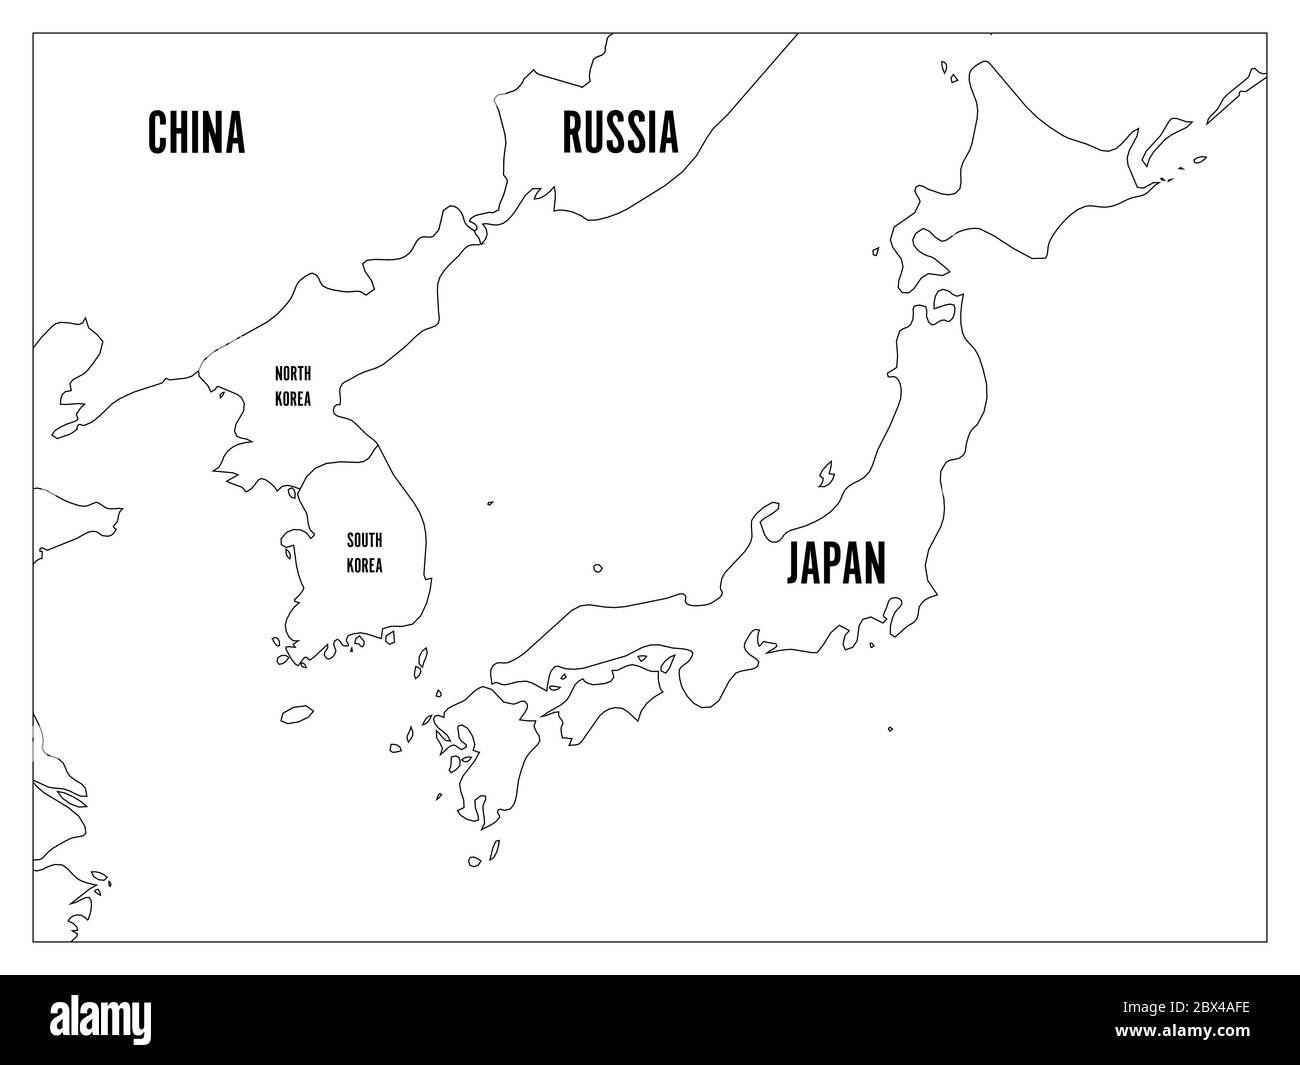 Politische Karte der koreanischen und japanischen Region, Südkorea, Nordkorea und Japan. Schwarze Umrisskarte mit schwarzer Beschriftung auf weißem Hintergrund. Vektorgrafik. Stock Vektor